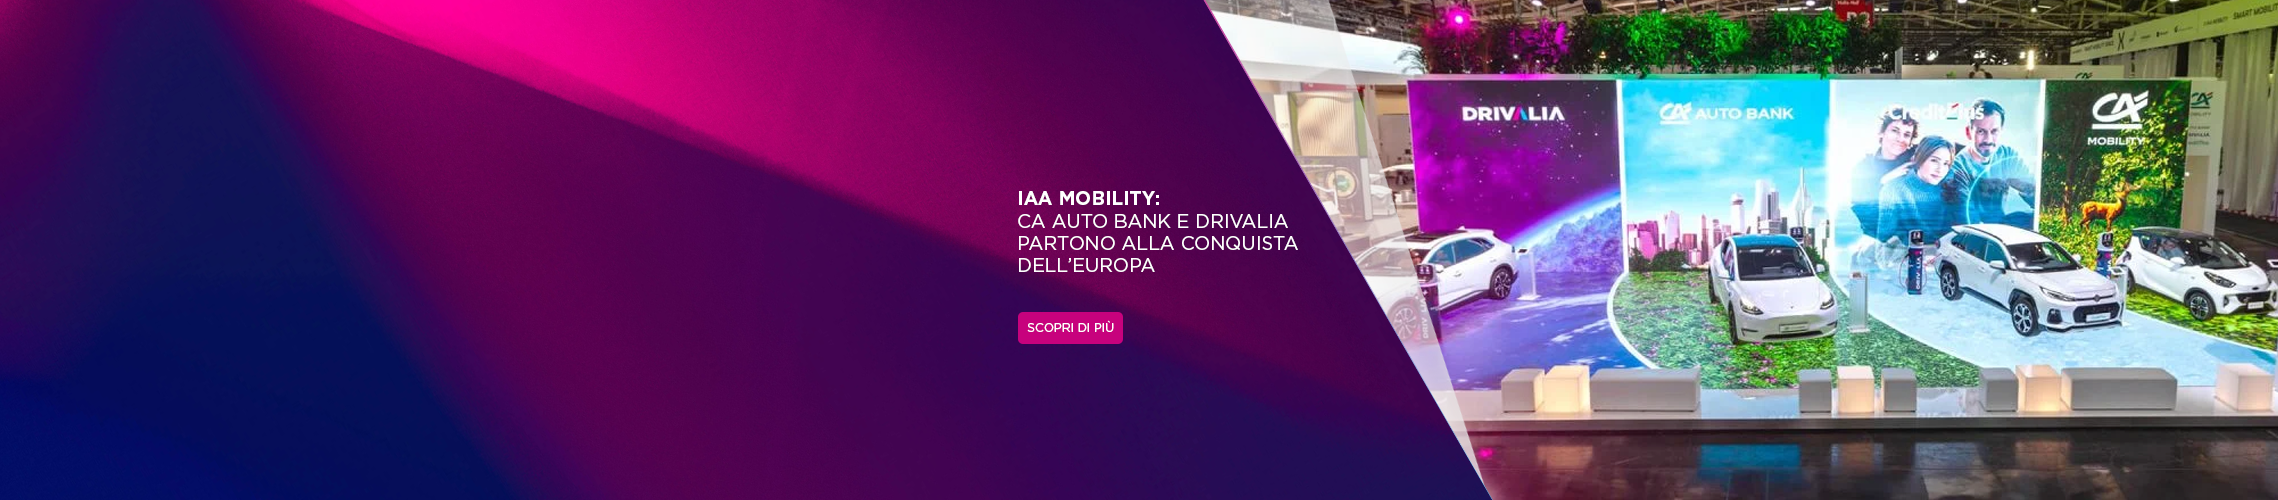 IAA Mobility: CA Auto Bank e Drivalia partono alla conquista dell’Europa